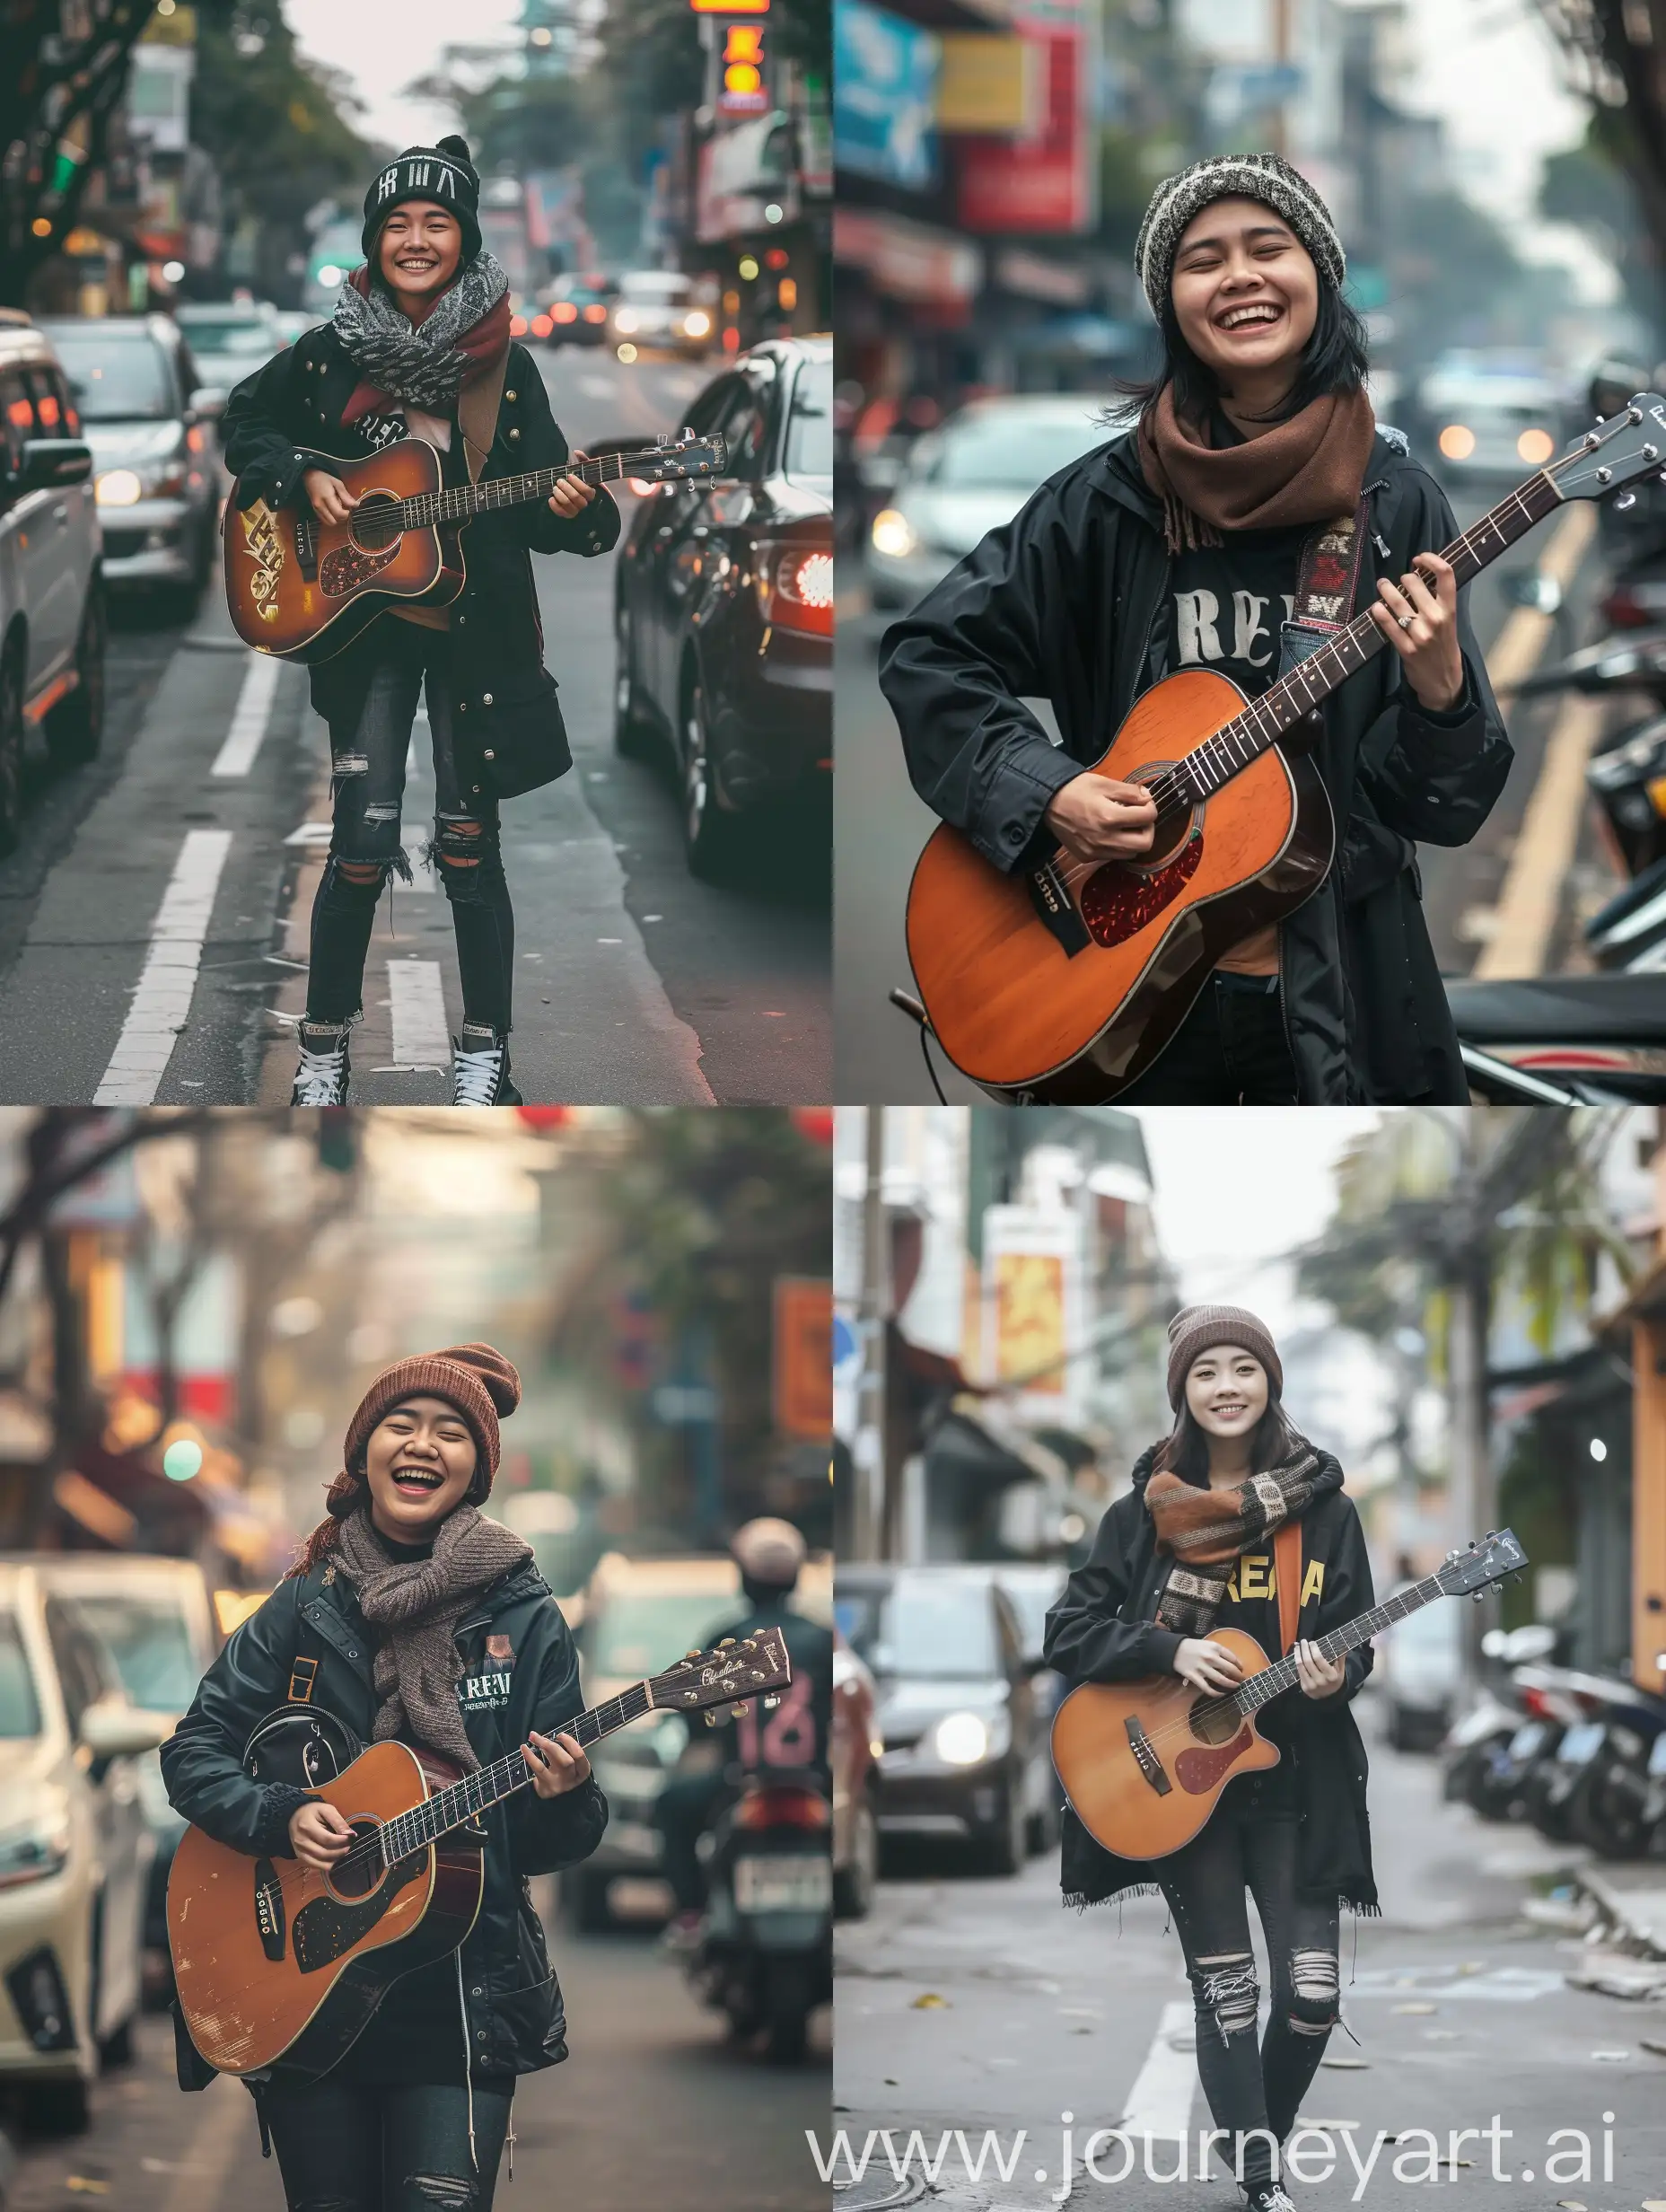 Woman-Playing-Guitar-in-Jakarta-Street-Scene